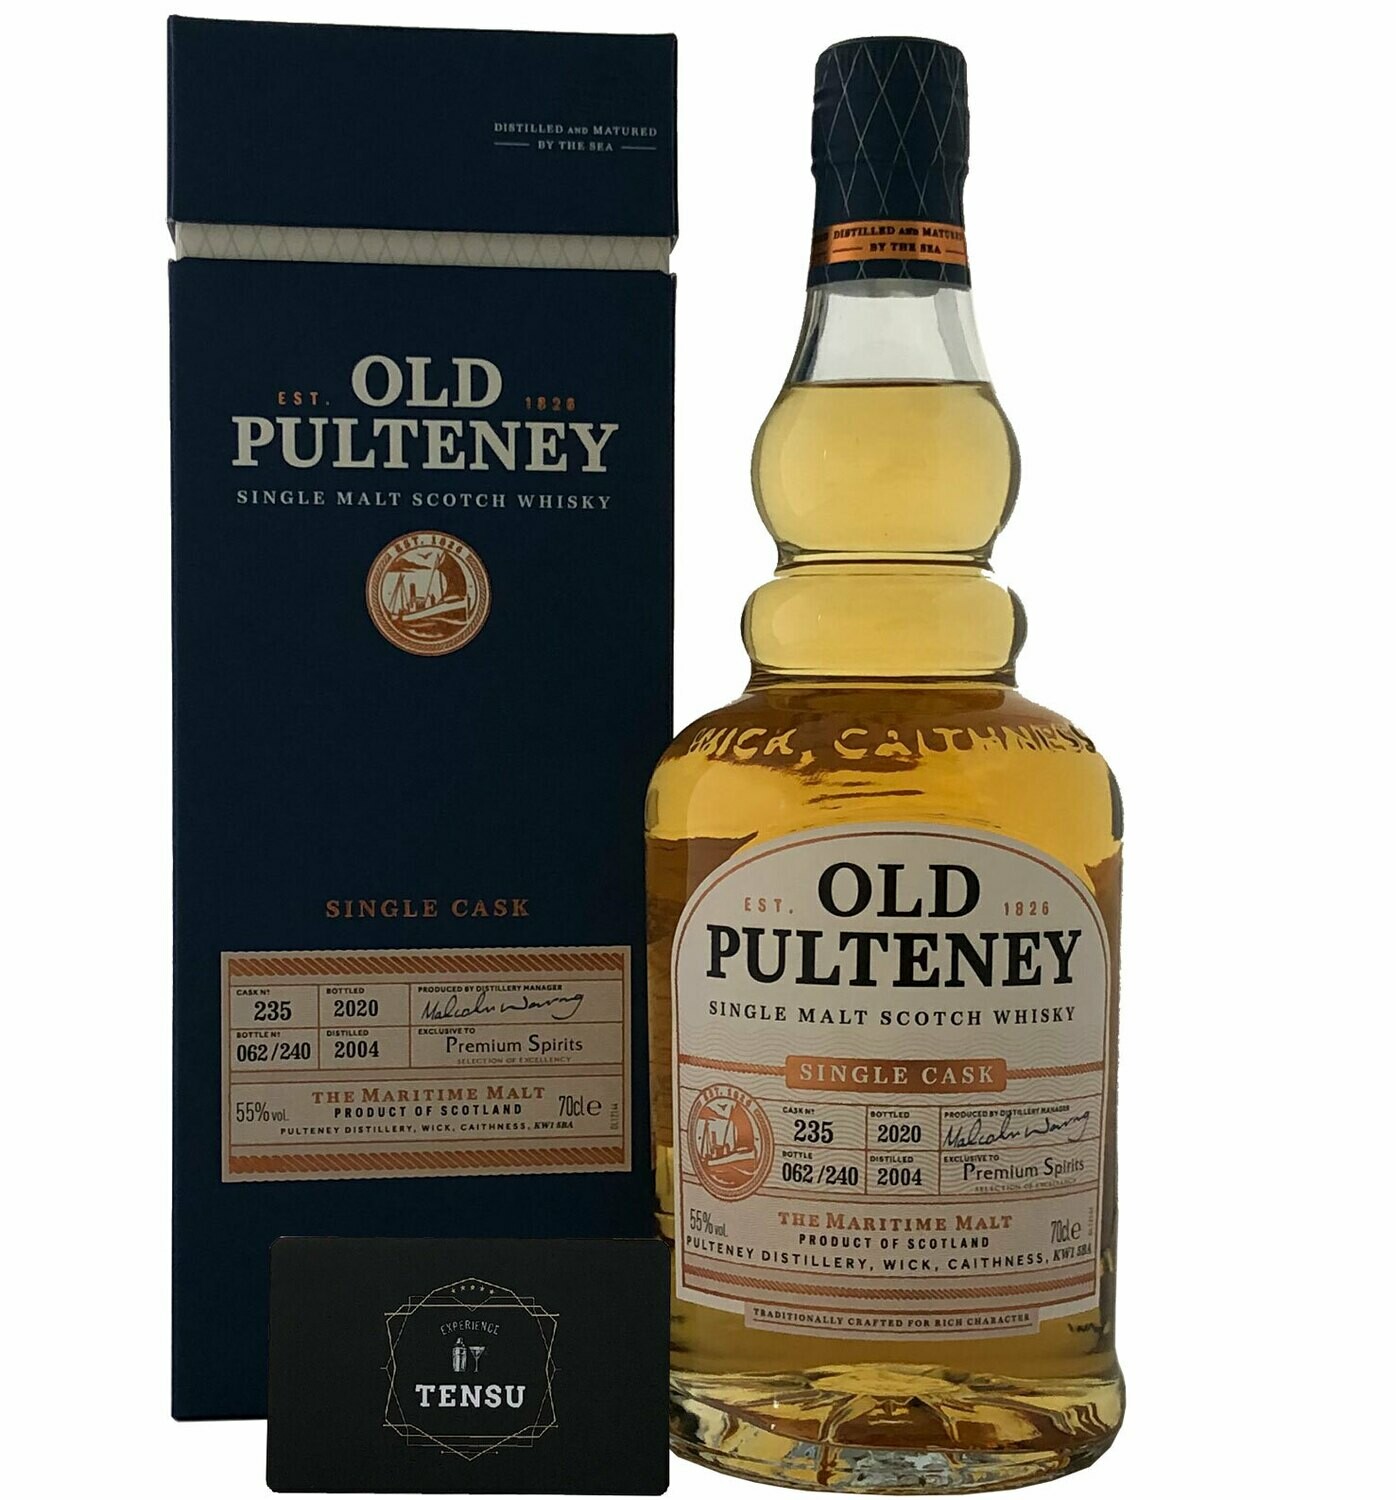 Old Pulteney 16Y (2004-2020) 55.0 "Premium Spirits"